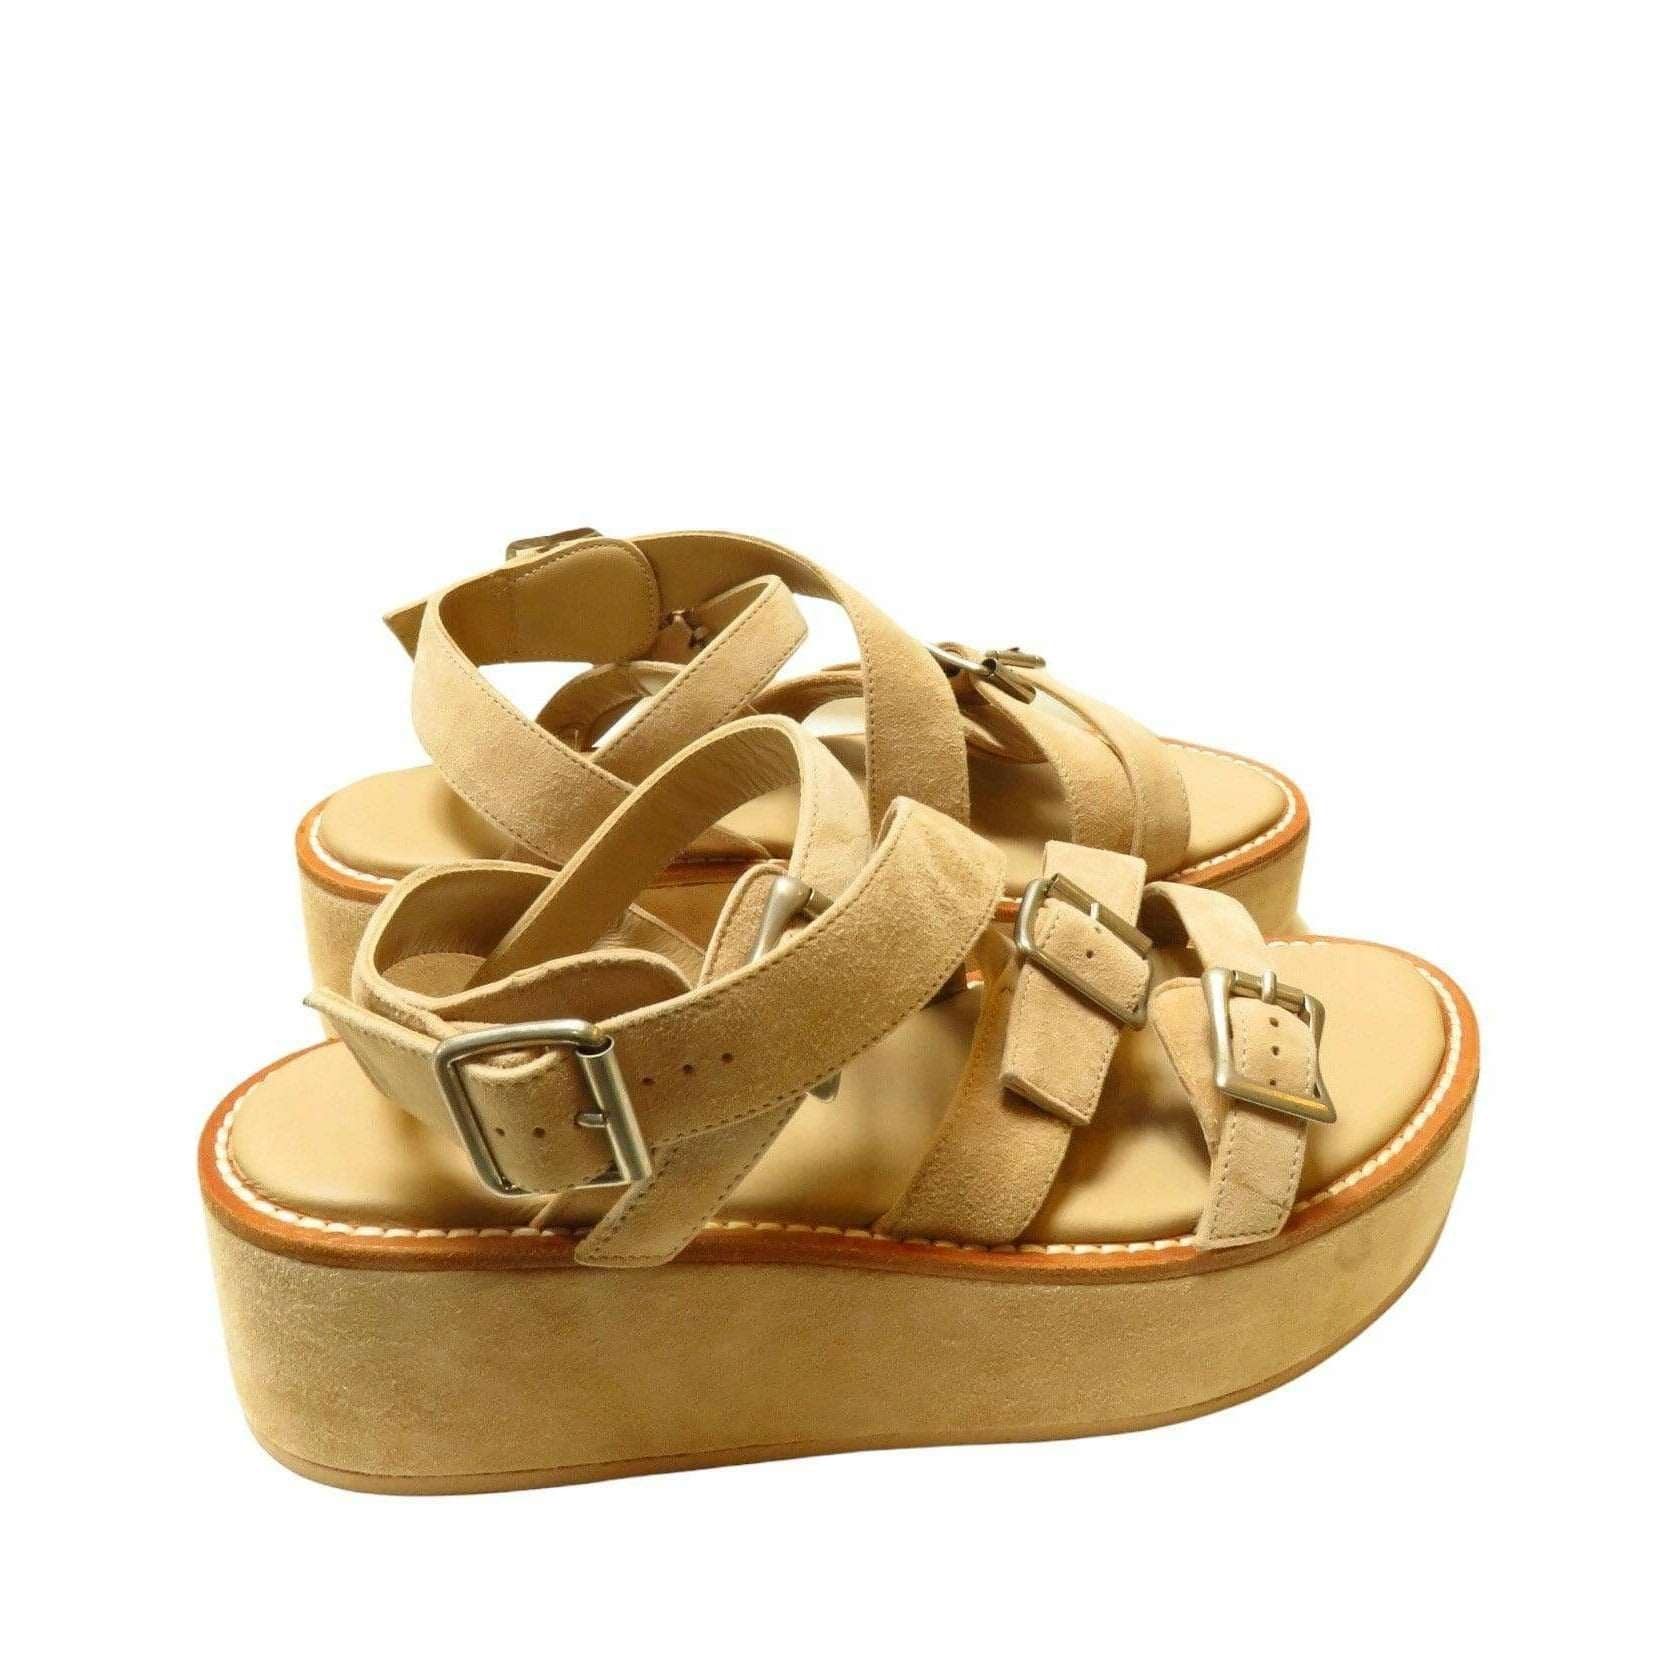 Ann Demeulemeester Shoes 40 / Tan / Suede Ann Demeulemeester Buckled Platform Sandal